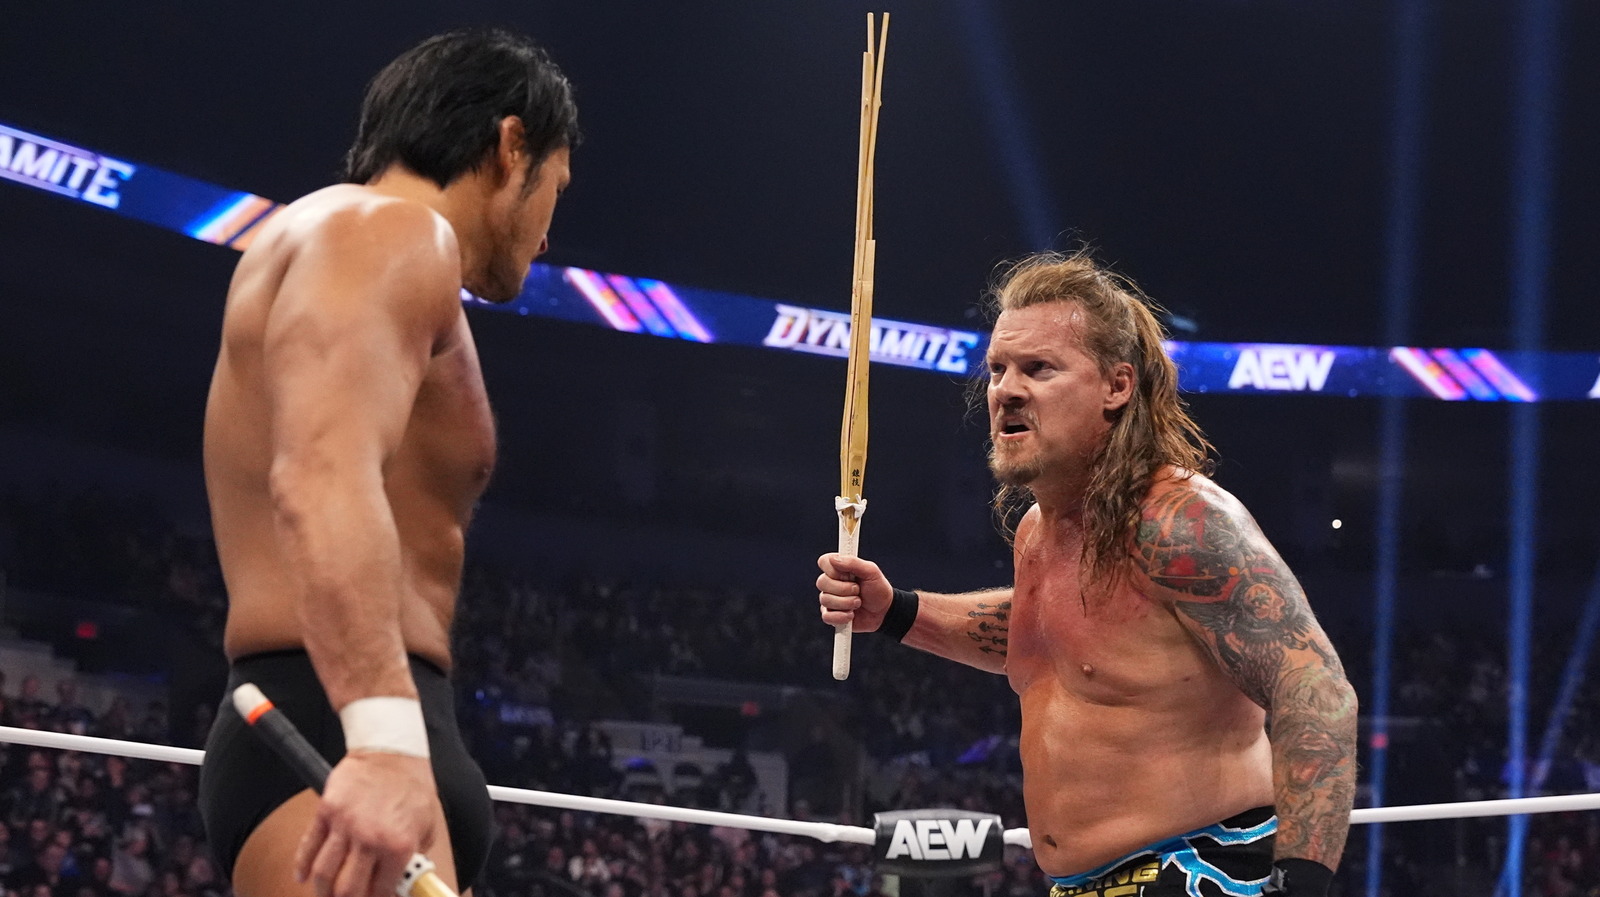 Bully Ray Reacts To Chris Jericho Vs. Katsuyori Shibata On AEW Dynamite